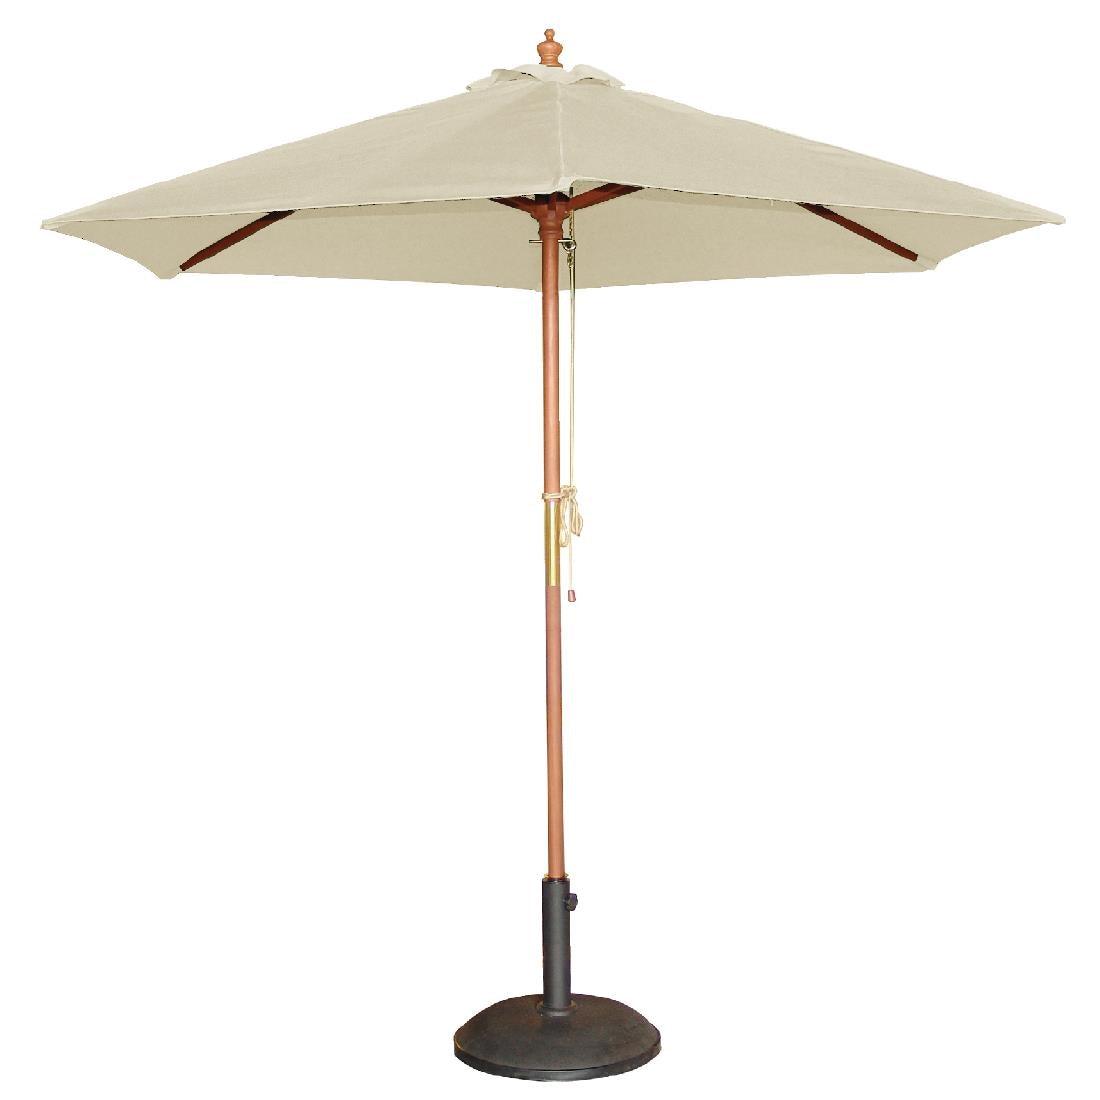 Bolero Round Outdoor Umbrella 2.5m Diameter Cream - HospoStore